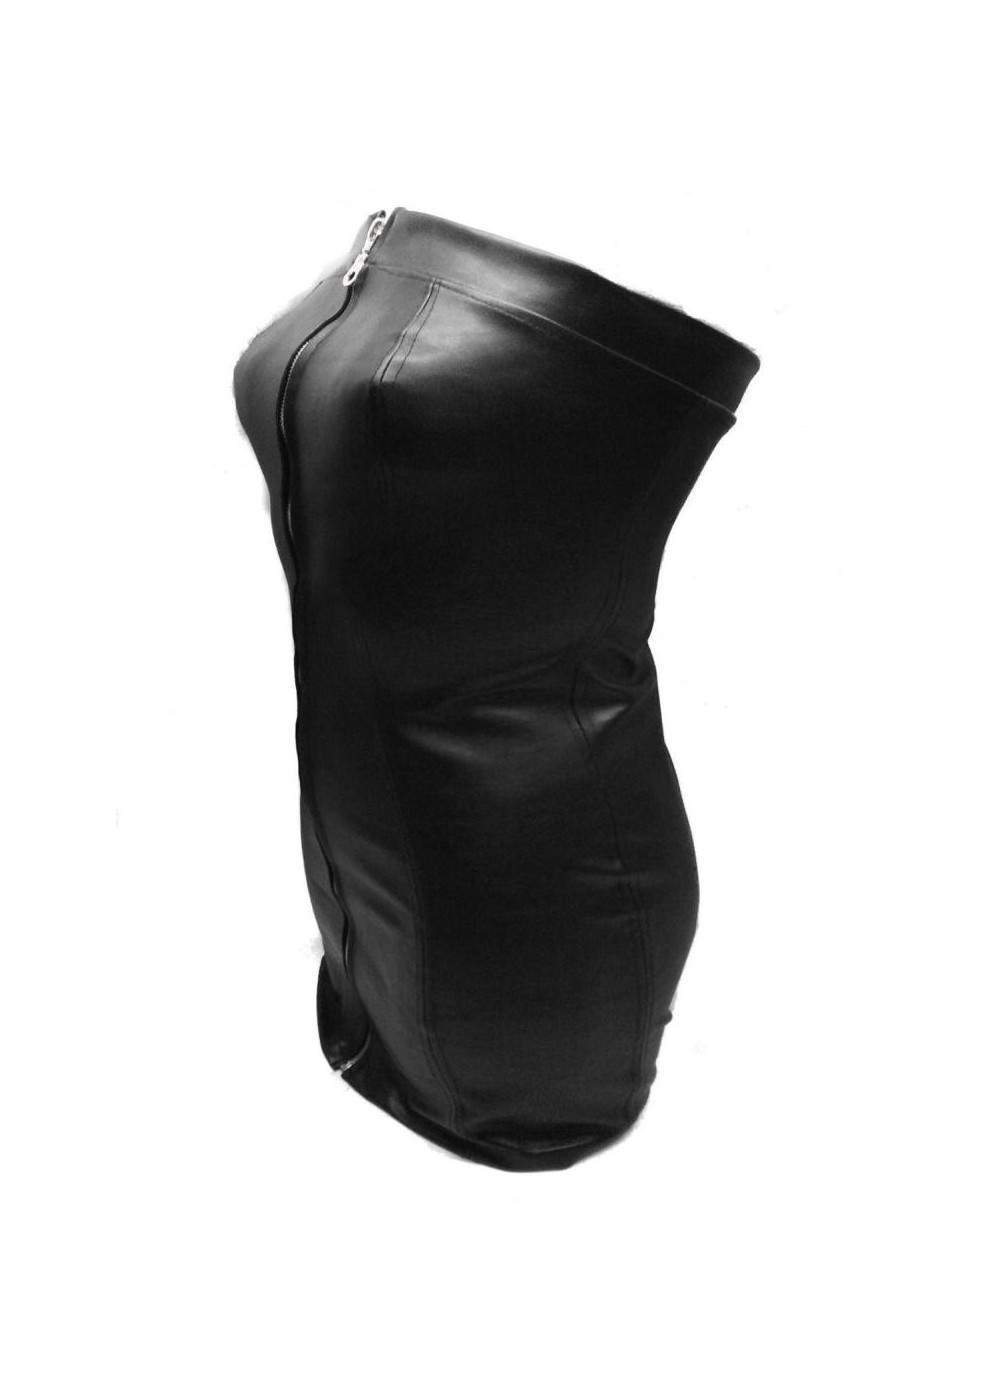 Gutschein 10 % Designer Leder Kleid schwarz Größe L - XXL (44 - 52) - 